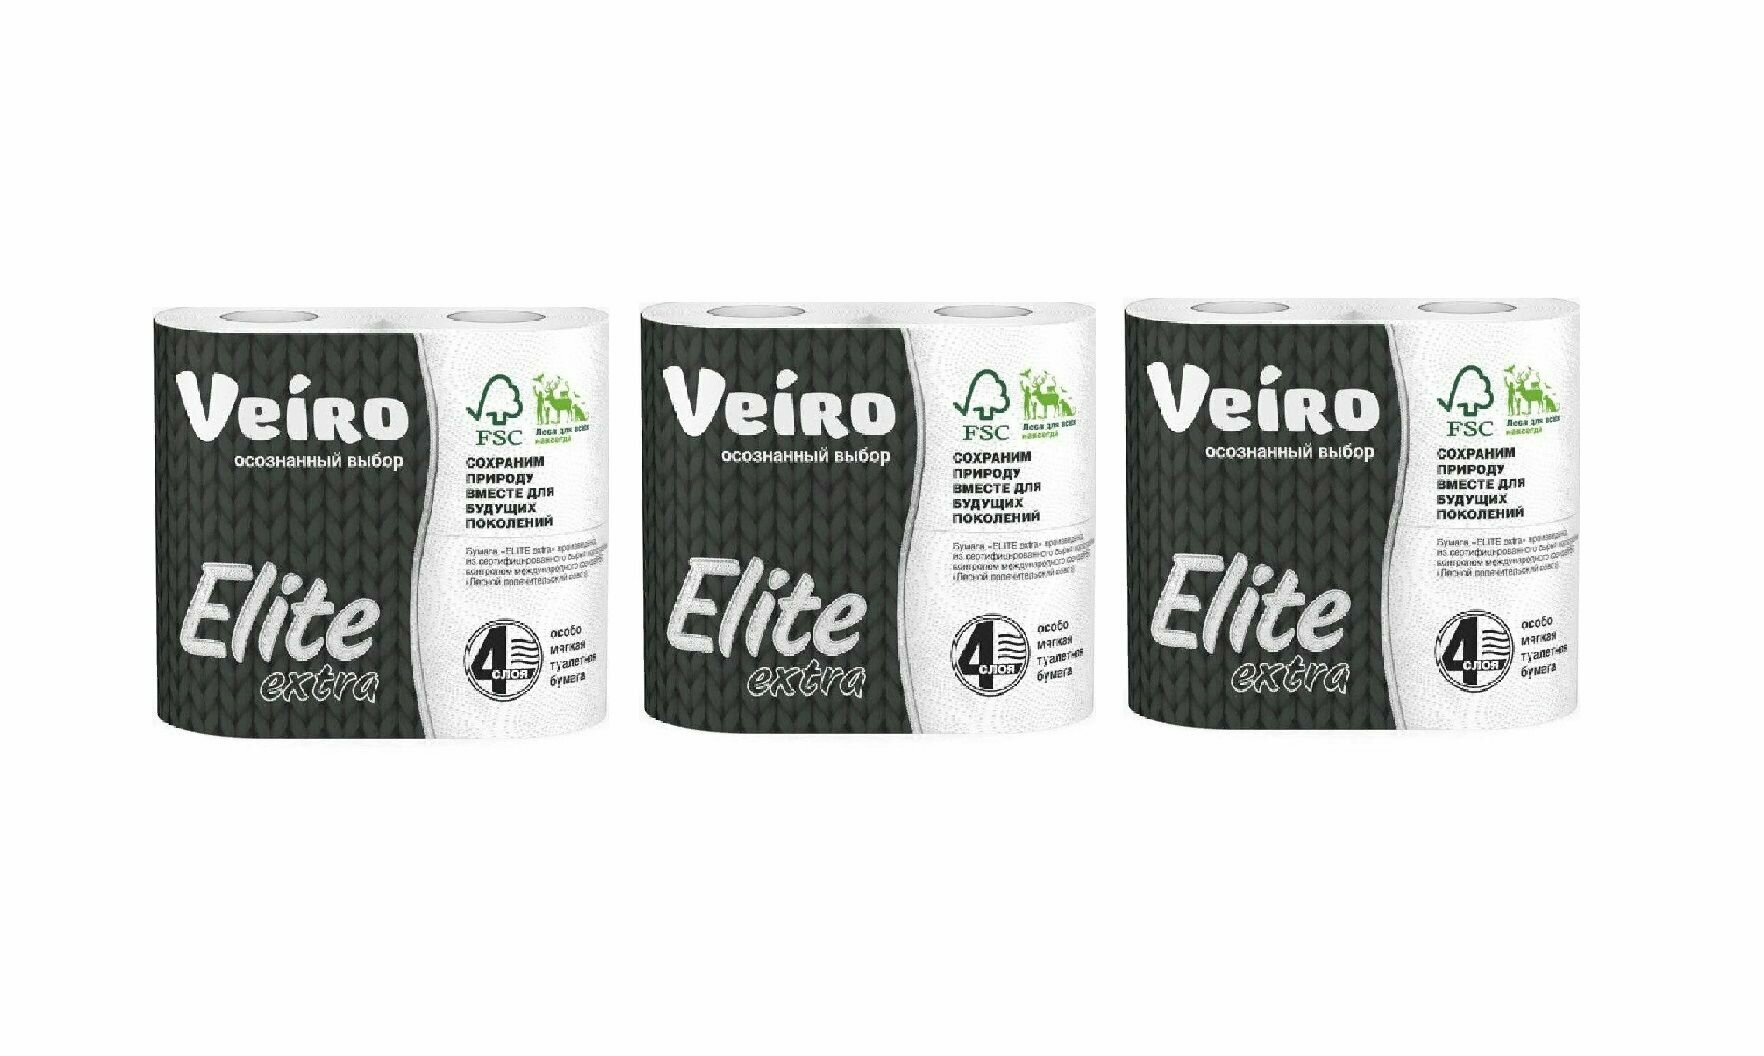 Veiro Туалетная бумага Elite Extra 4 слоя, 4 рулона, Белая, 3 упаковки